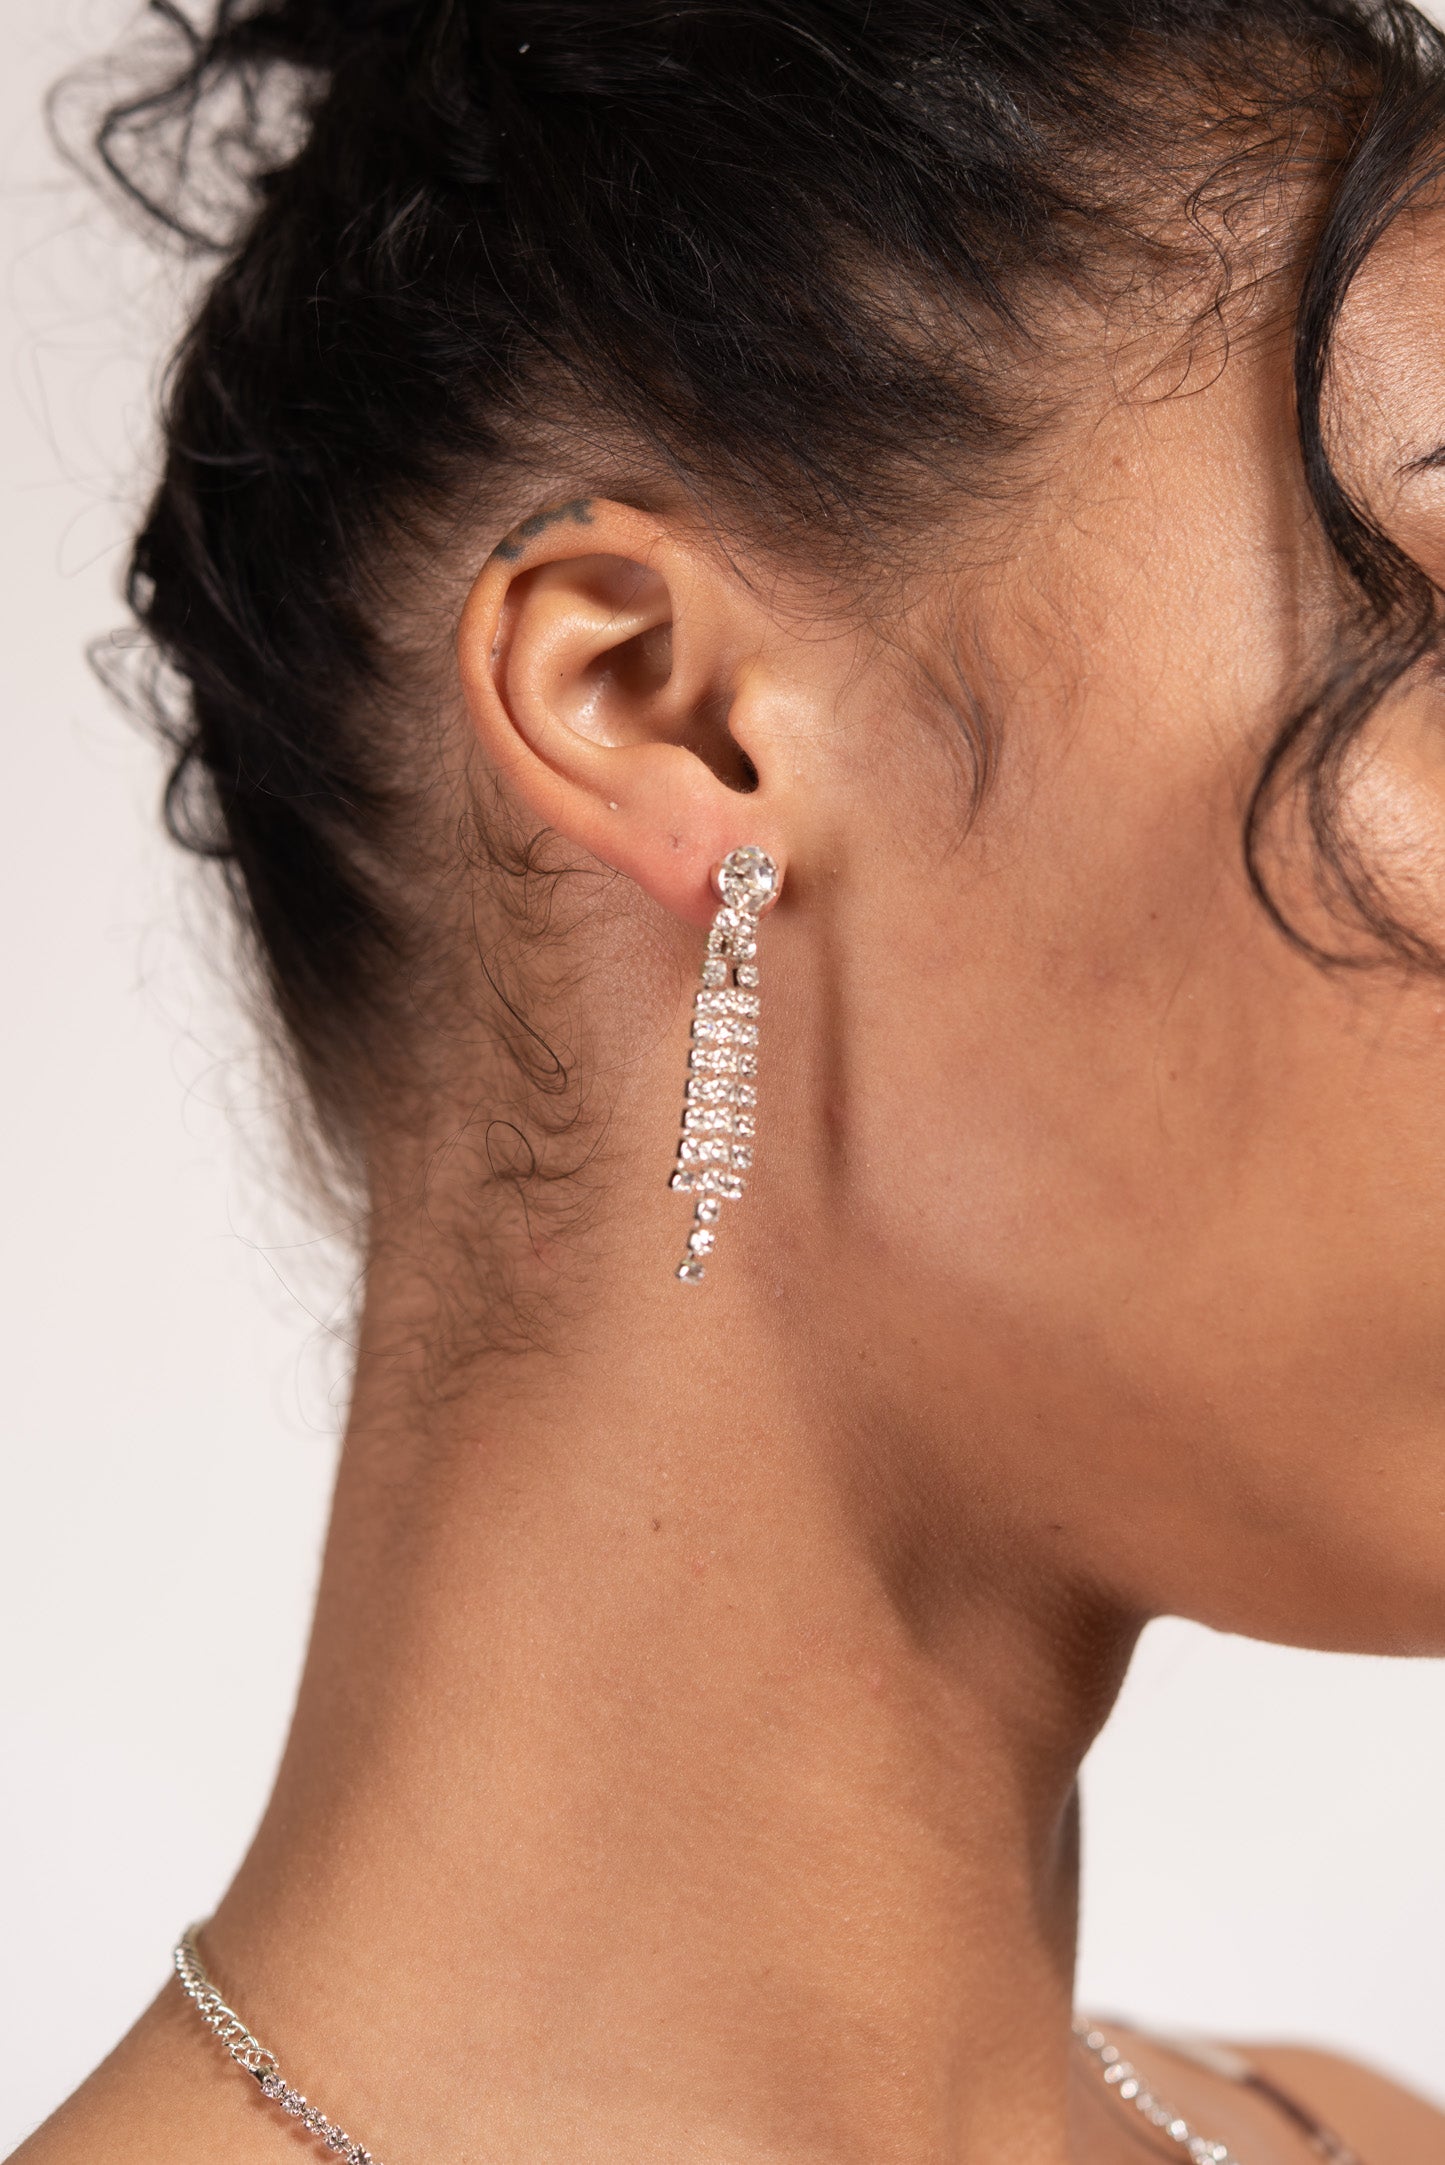 Charmaine Fringe Rhinestone Necklace & Earring Set